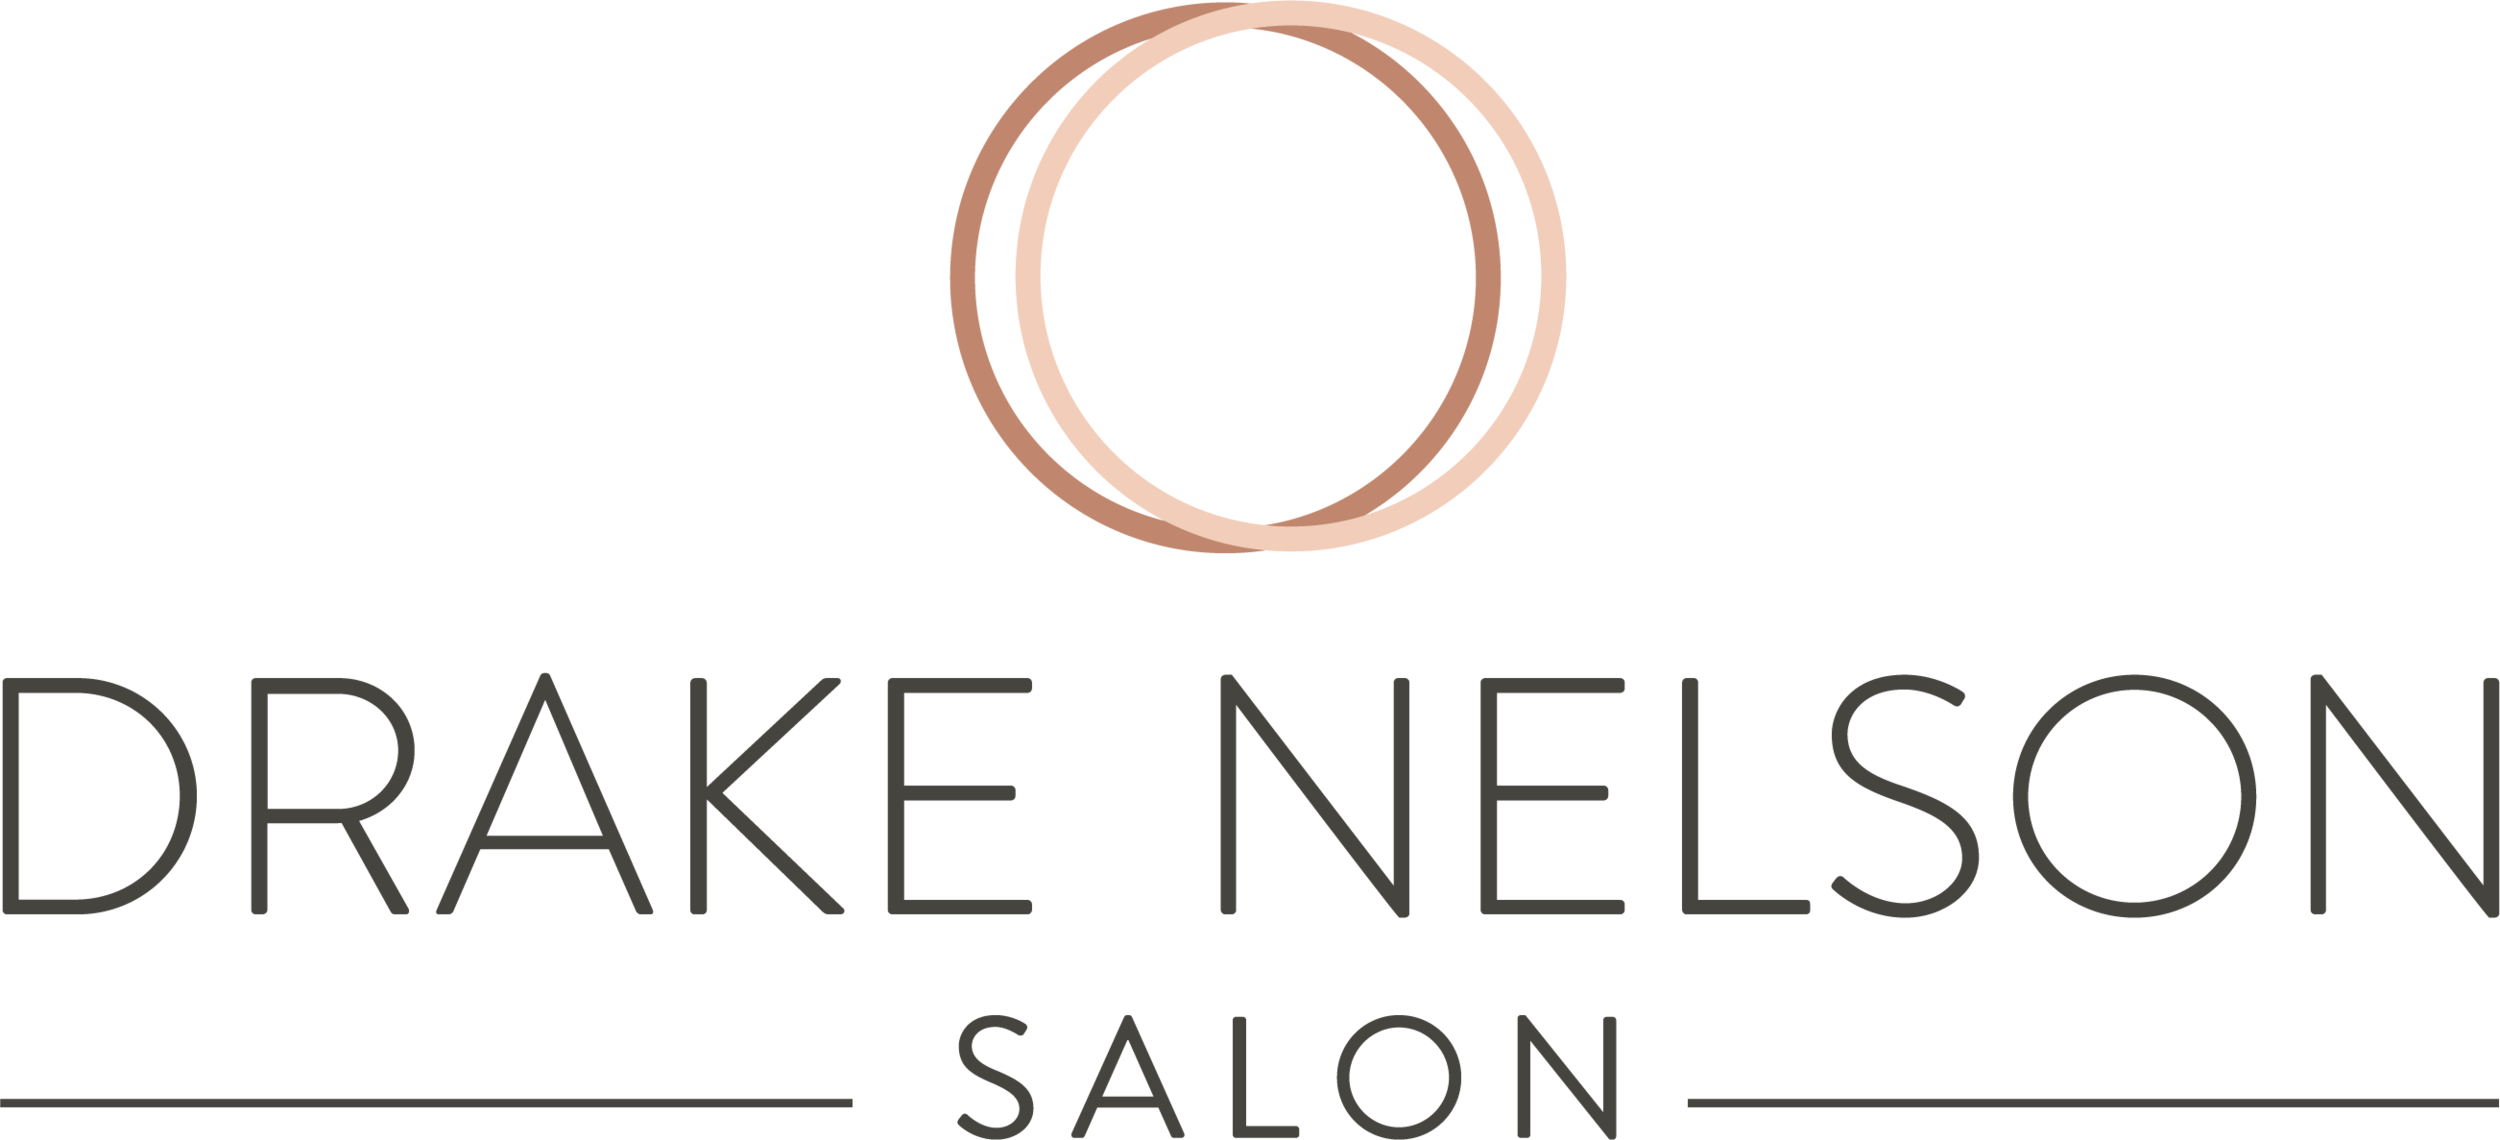 Drake Nelson Salon - Hair Salon in Tacoma, Washington